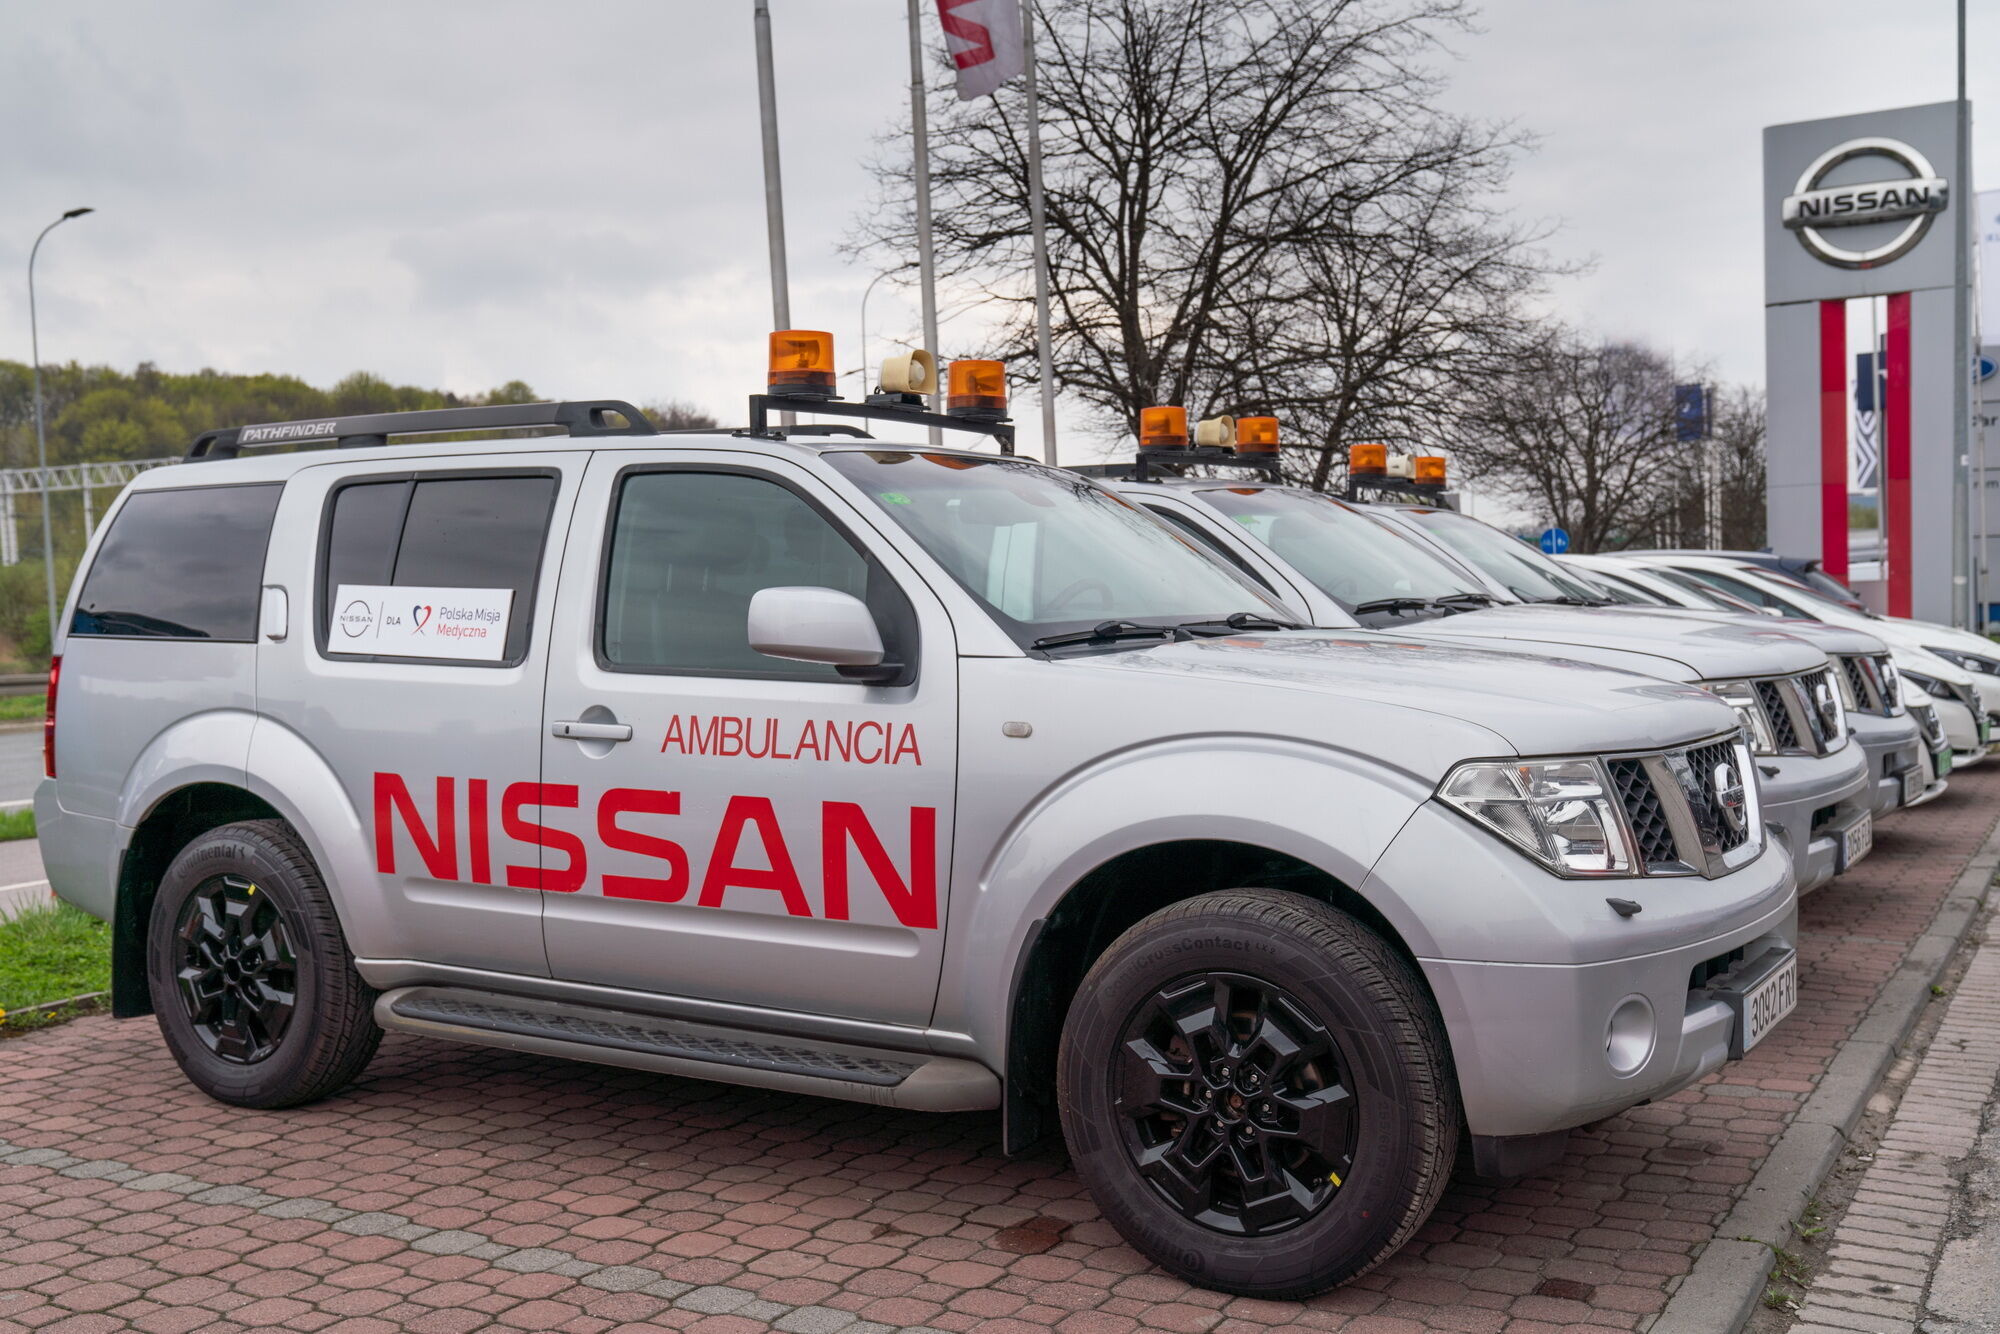 Внедорожники Nissan оснащены мощными 4- и 6-цилиндровыми двигателями, обеспечивающими возможность движения в тяжелых полевых условиях